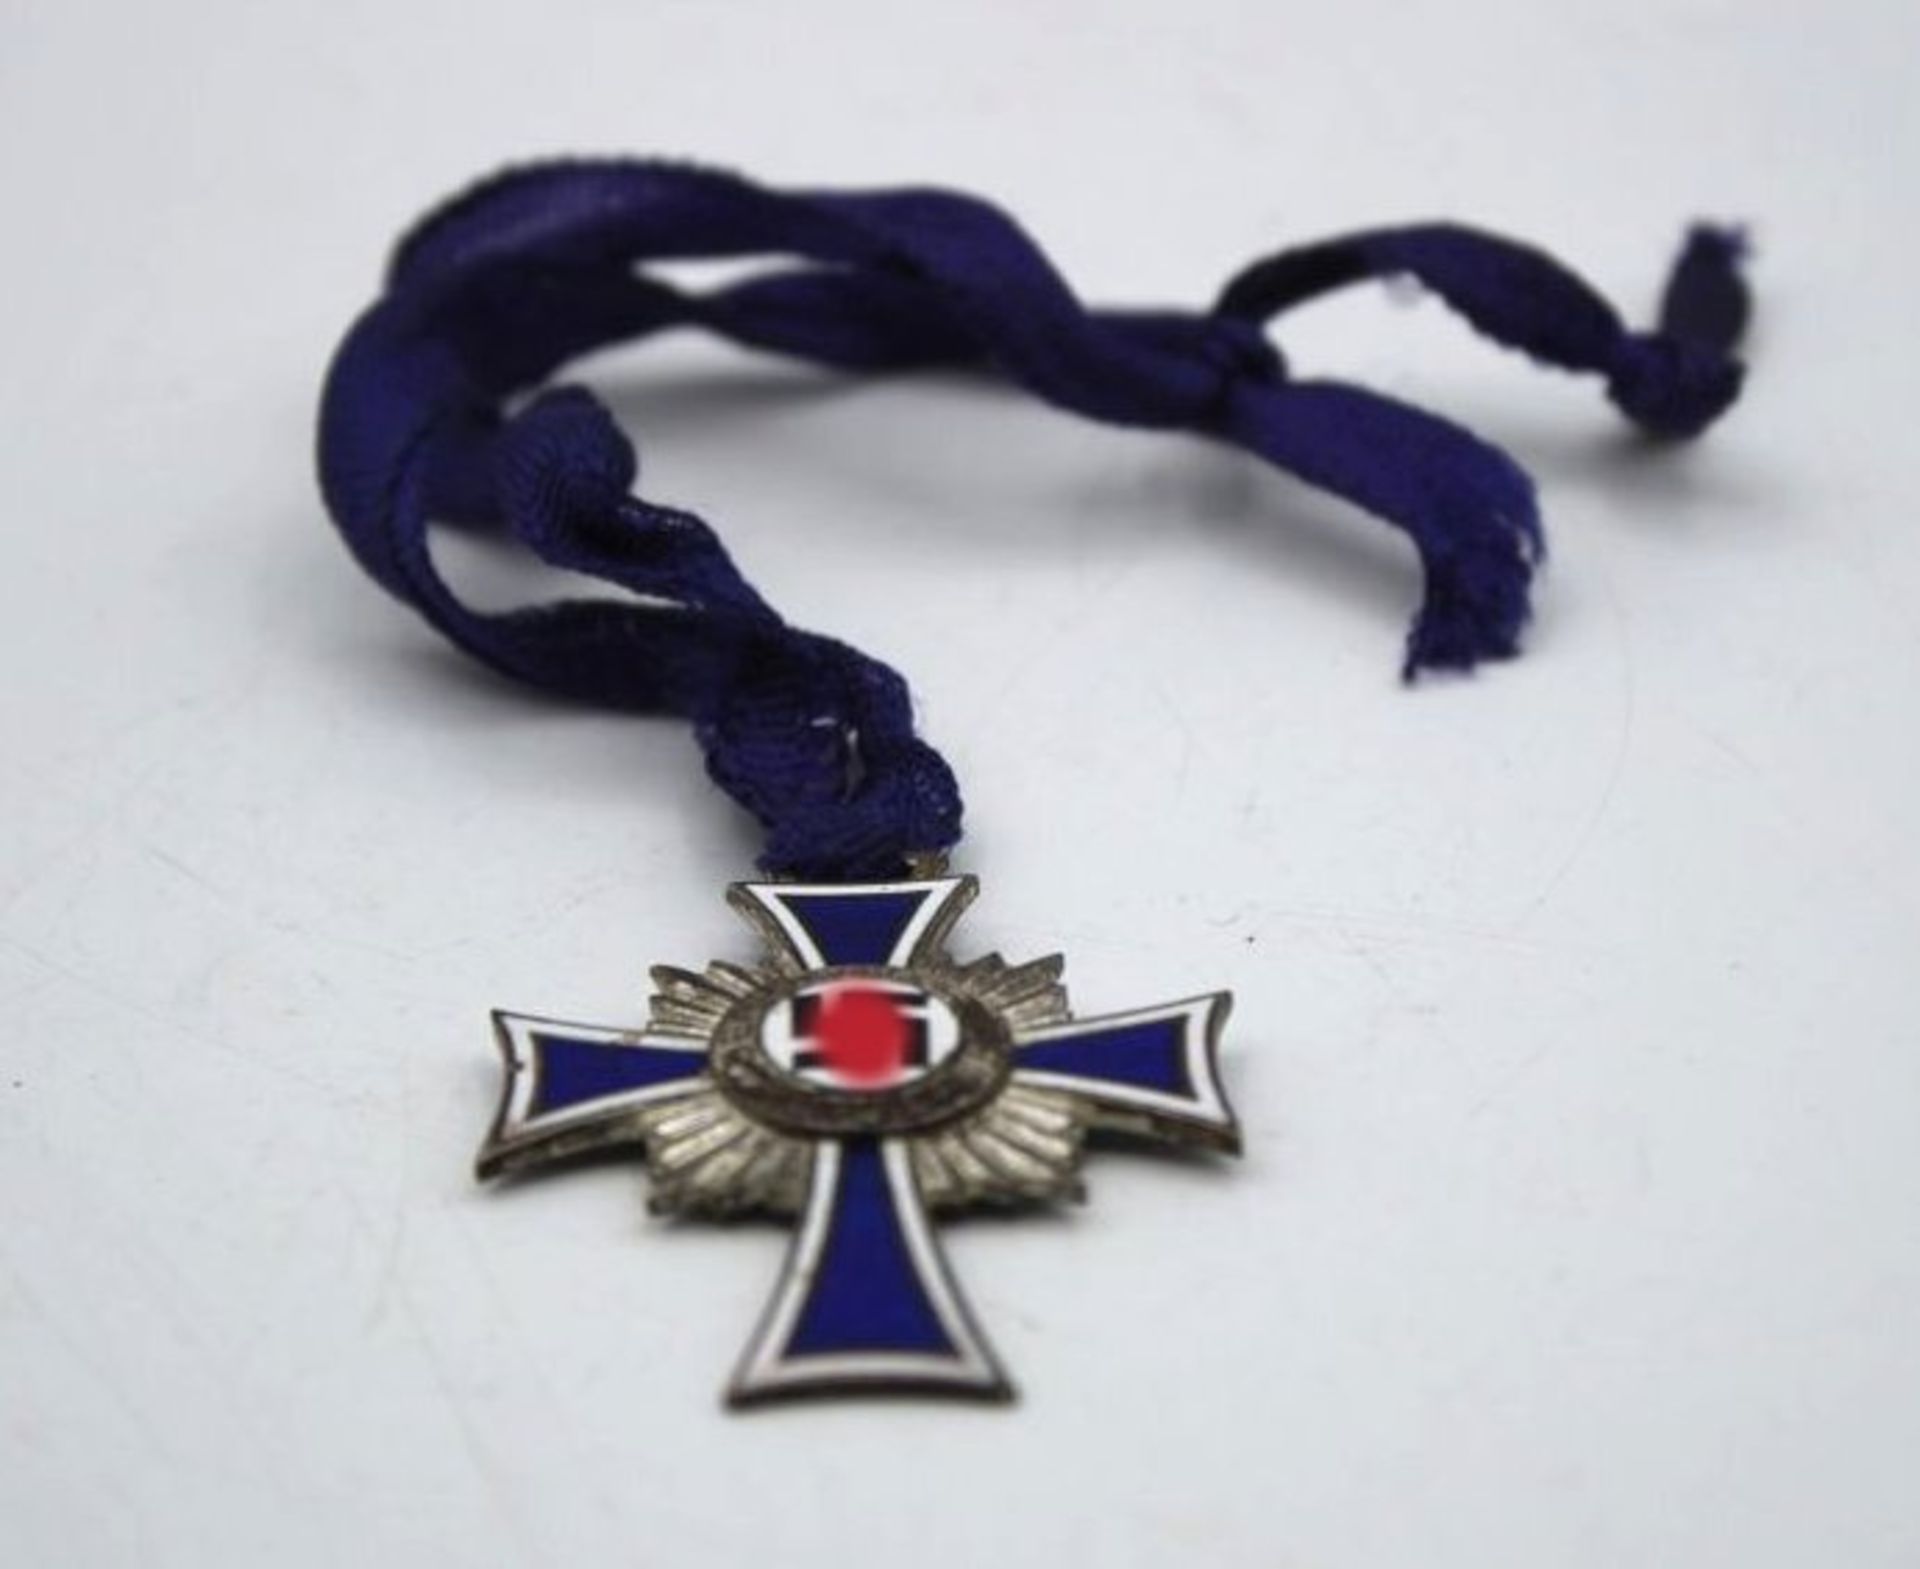 Mutterkreuz in Silber am Band, 3. Reich.